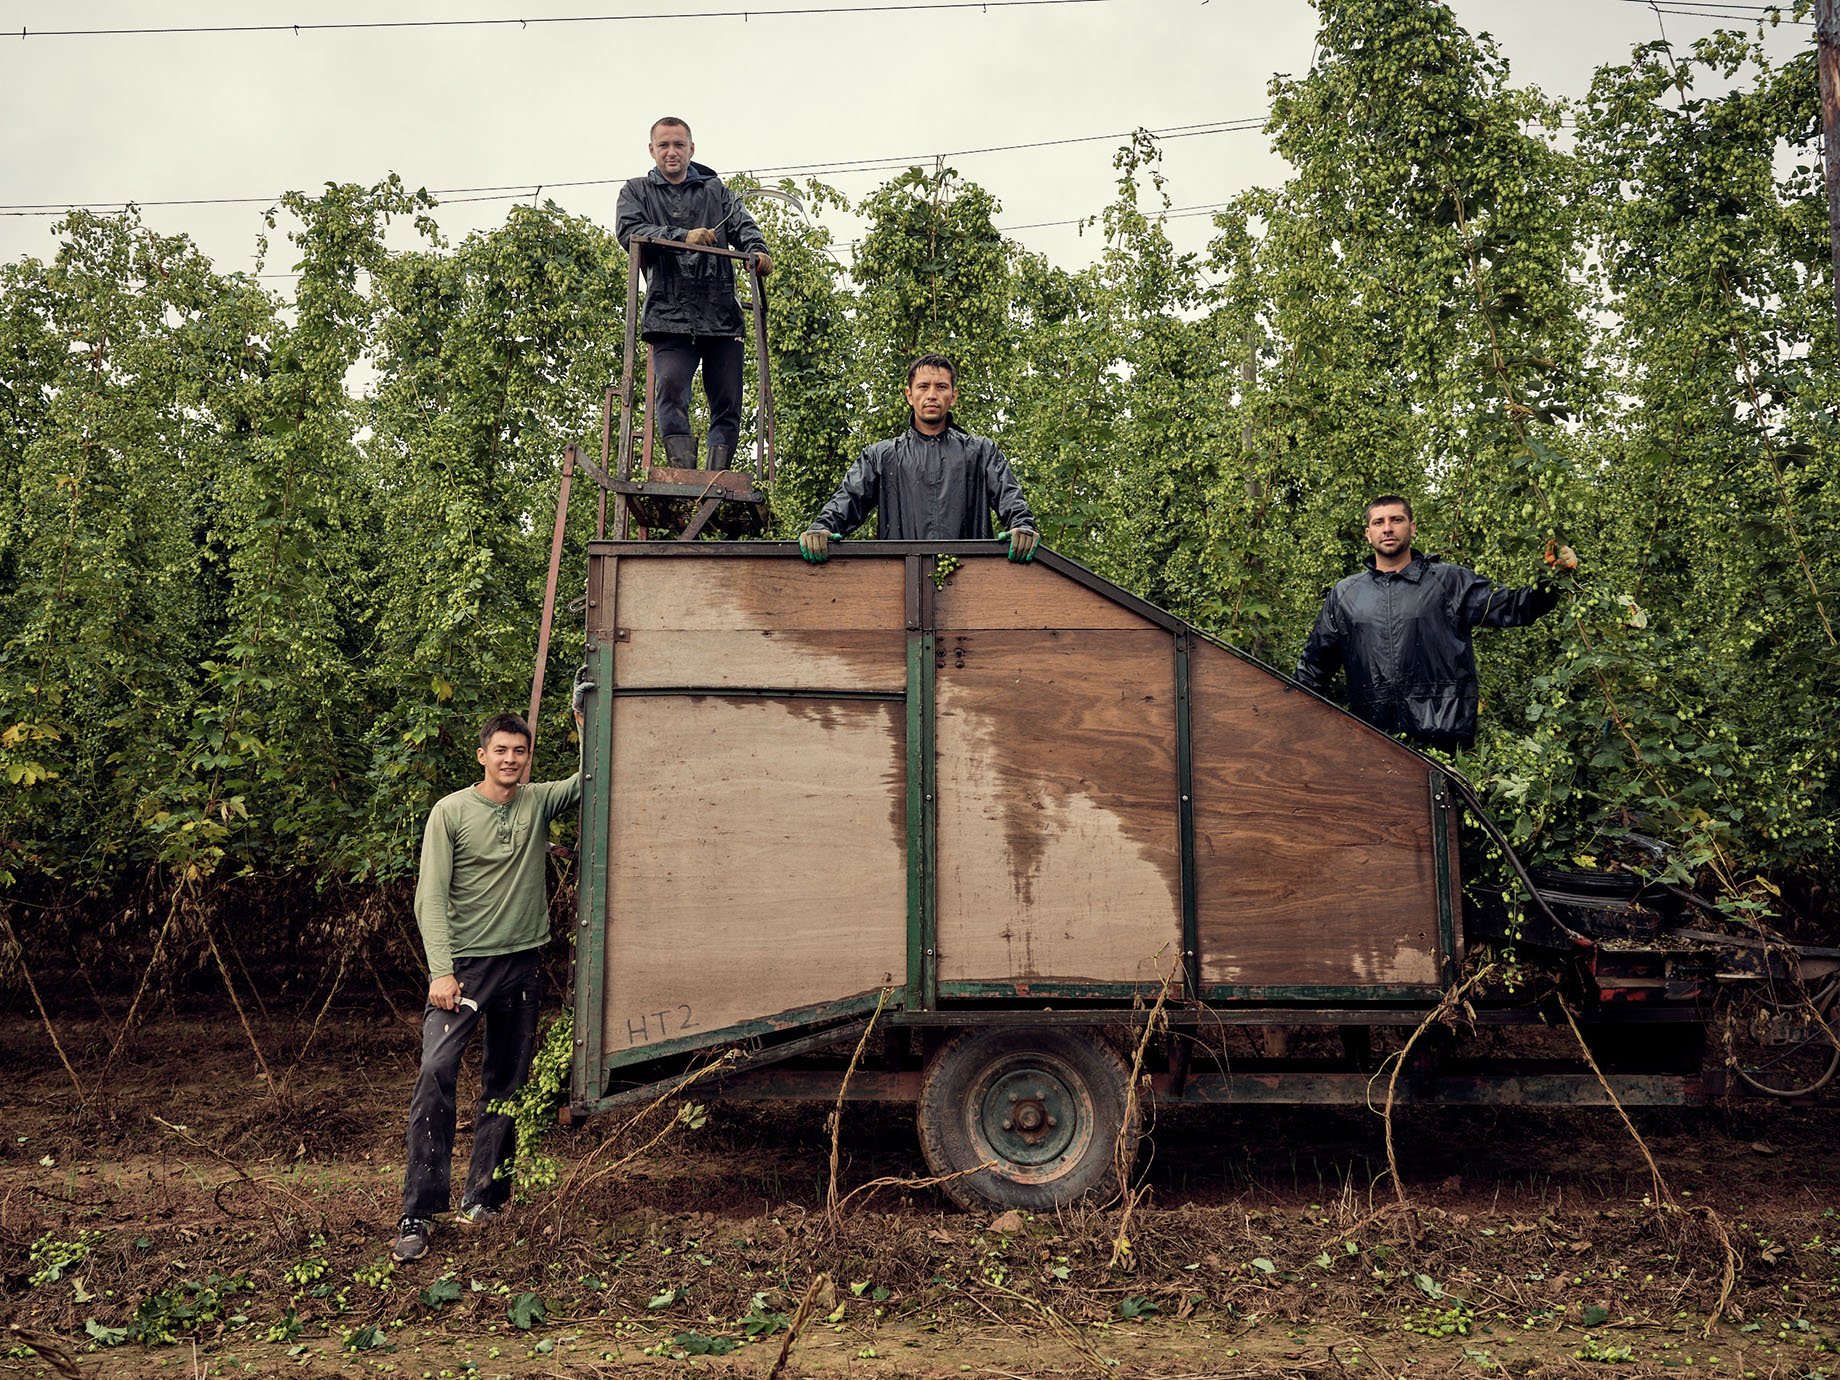 Stocks Farm hop harvest shot by Duncan Elliott